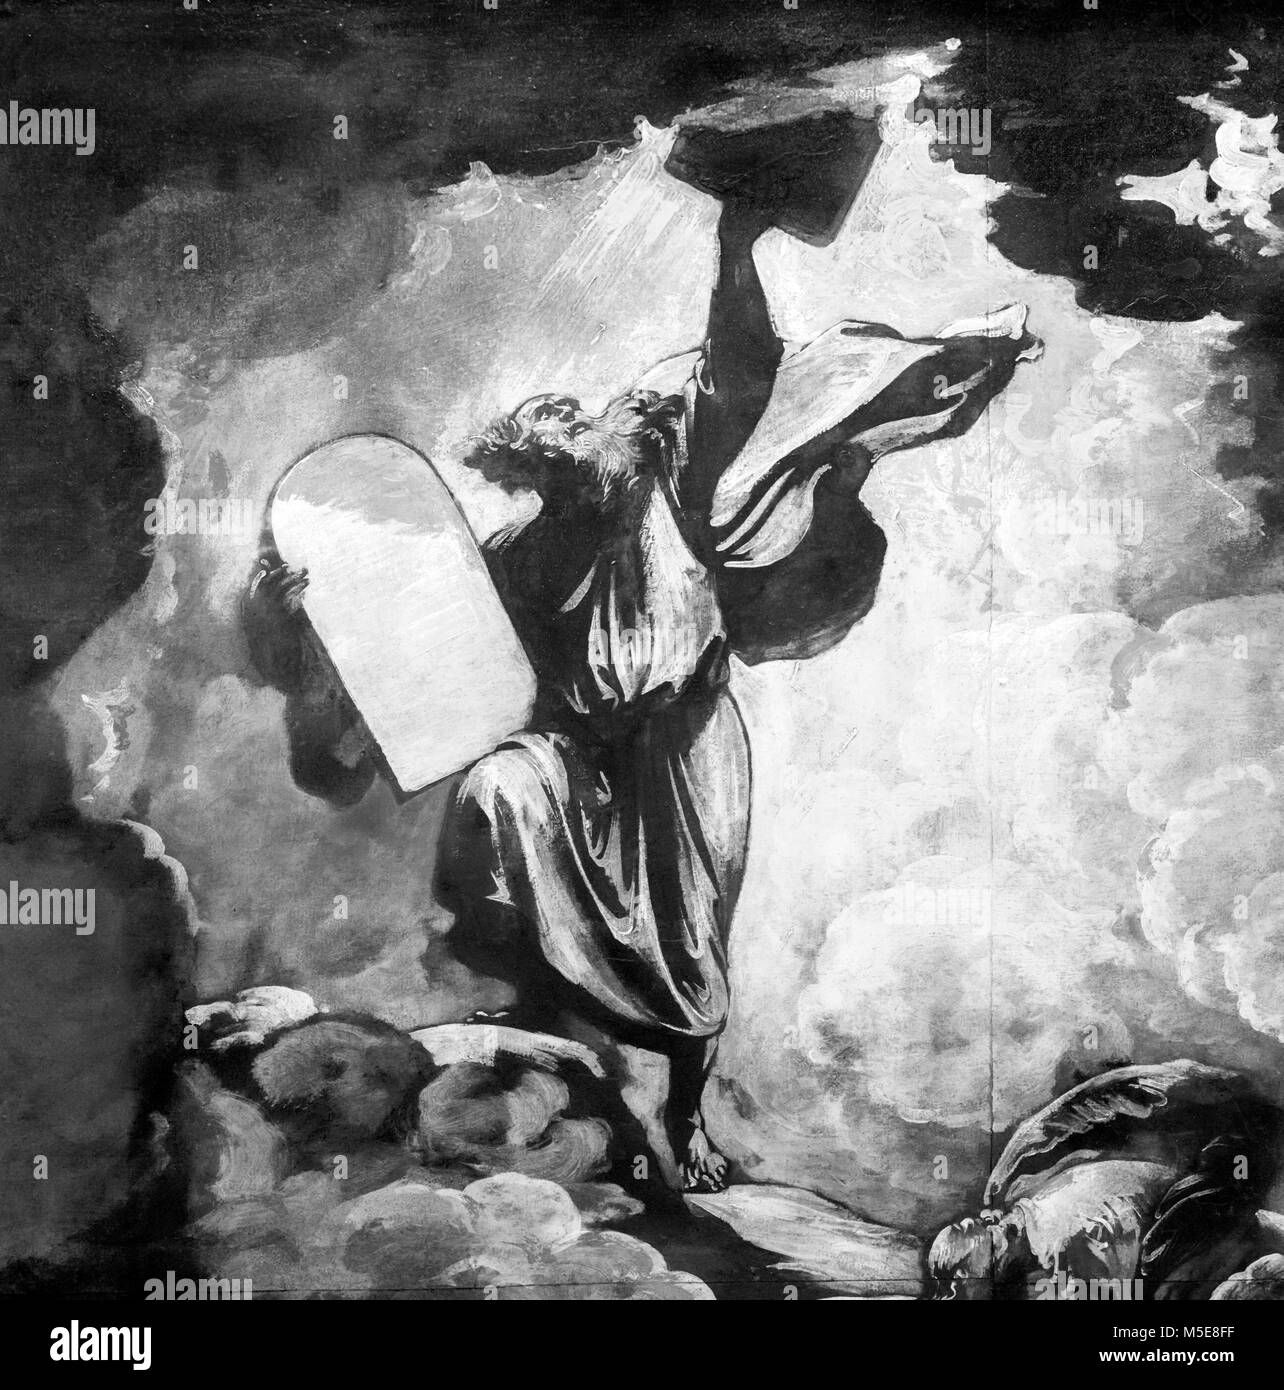 Mosè e le Tavole della Legge da Benjamin West (1738-1820), olio su carta, c.1780. Si tratta di un bozzetto preparatorio per un dipinto di grandi dimensioni che mostra Mosè riceve i dieci comandamenti di Dio. Dettaglio di un dipinto di grandi dimensioni. Foto Stock